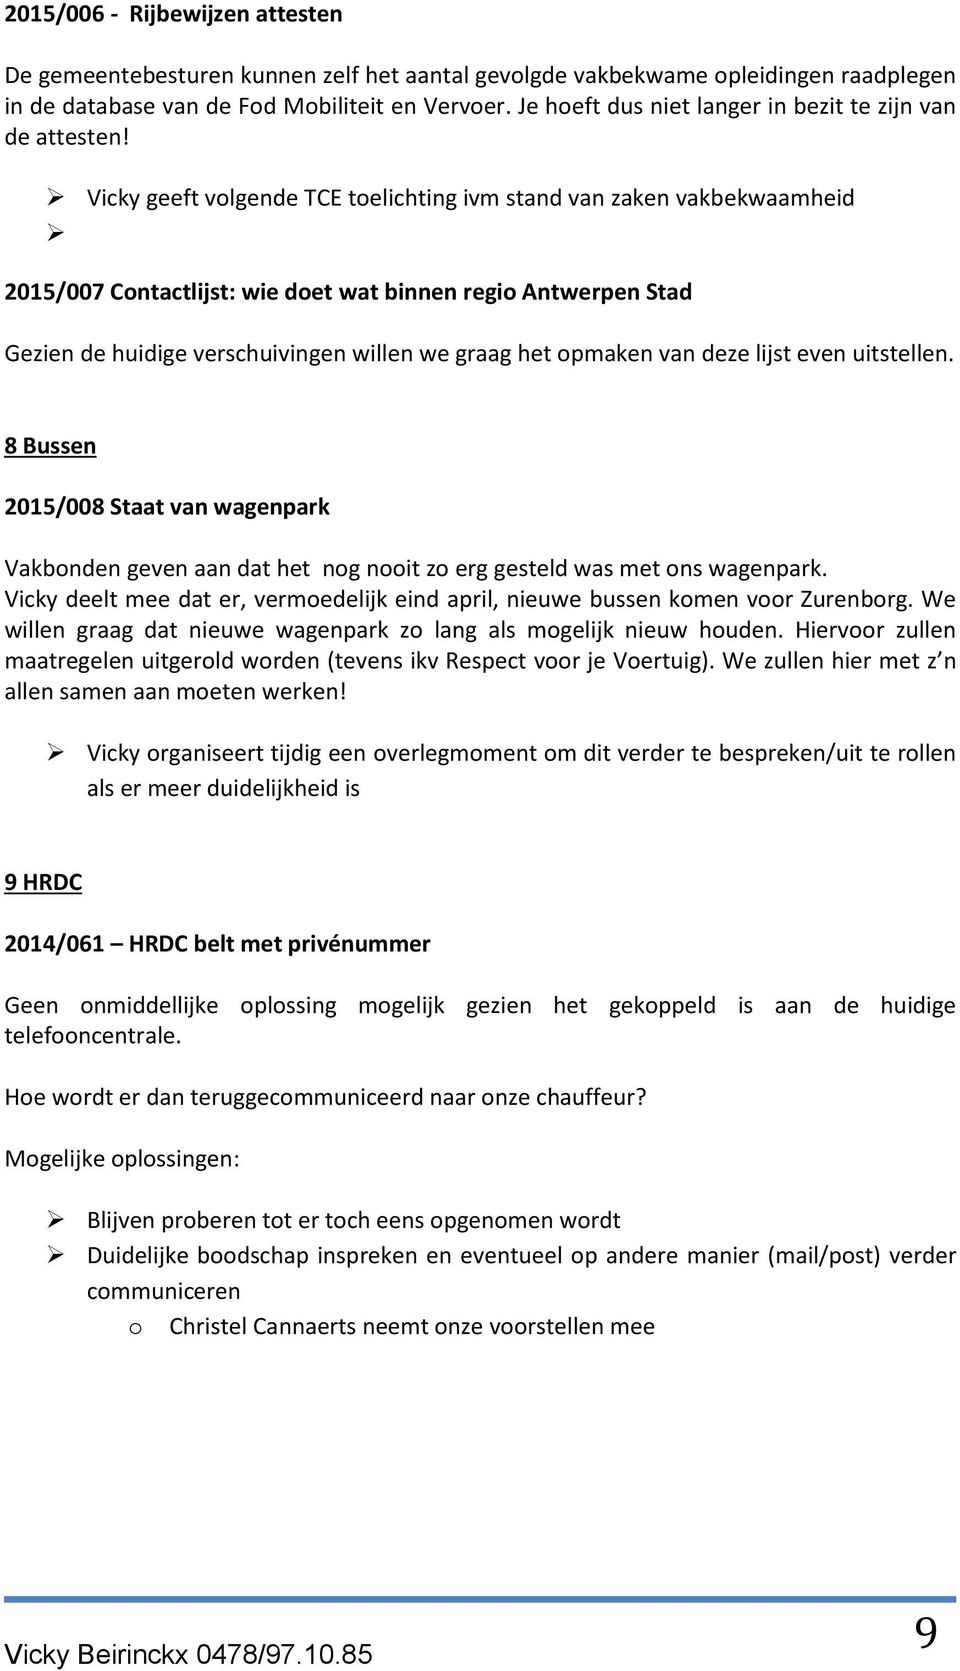 Vicky geeft volgende TCE toelichting ivm stand van zaken vakbekwaamheid 2015/007 Contactlijst: wie doet wat binnen regio Antwerpen Stad Gezien de huidige verschuivingen willen we graag het opmaken